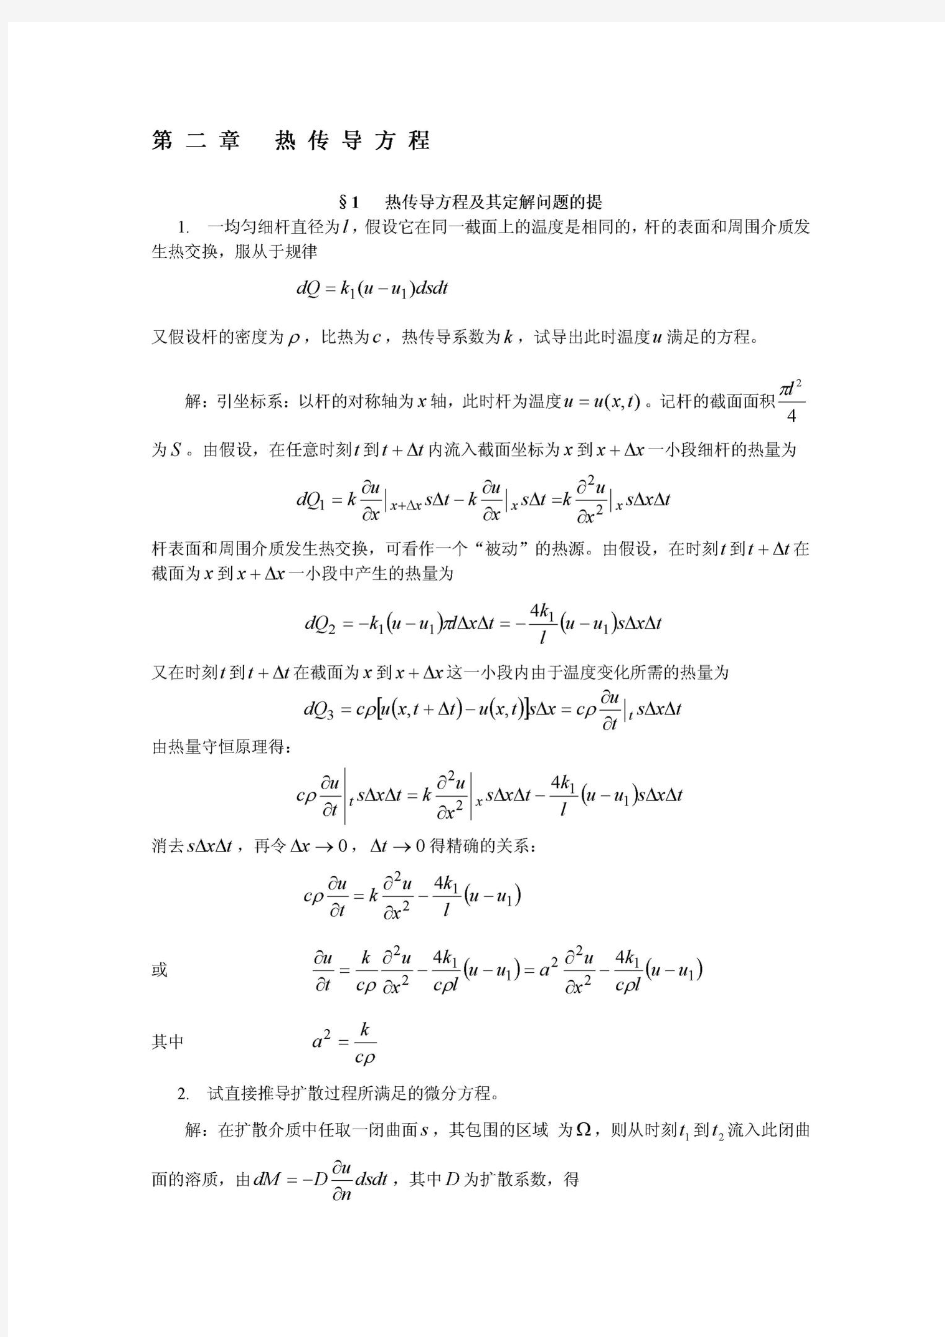 数学物理方程习题解(谷超豪) 第二章 热传导方程(优选.)